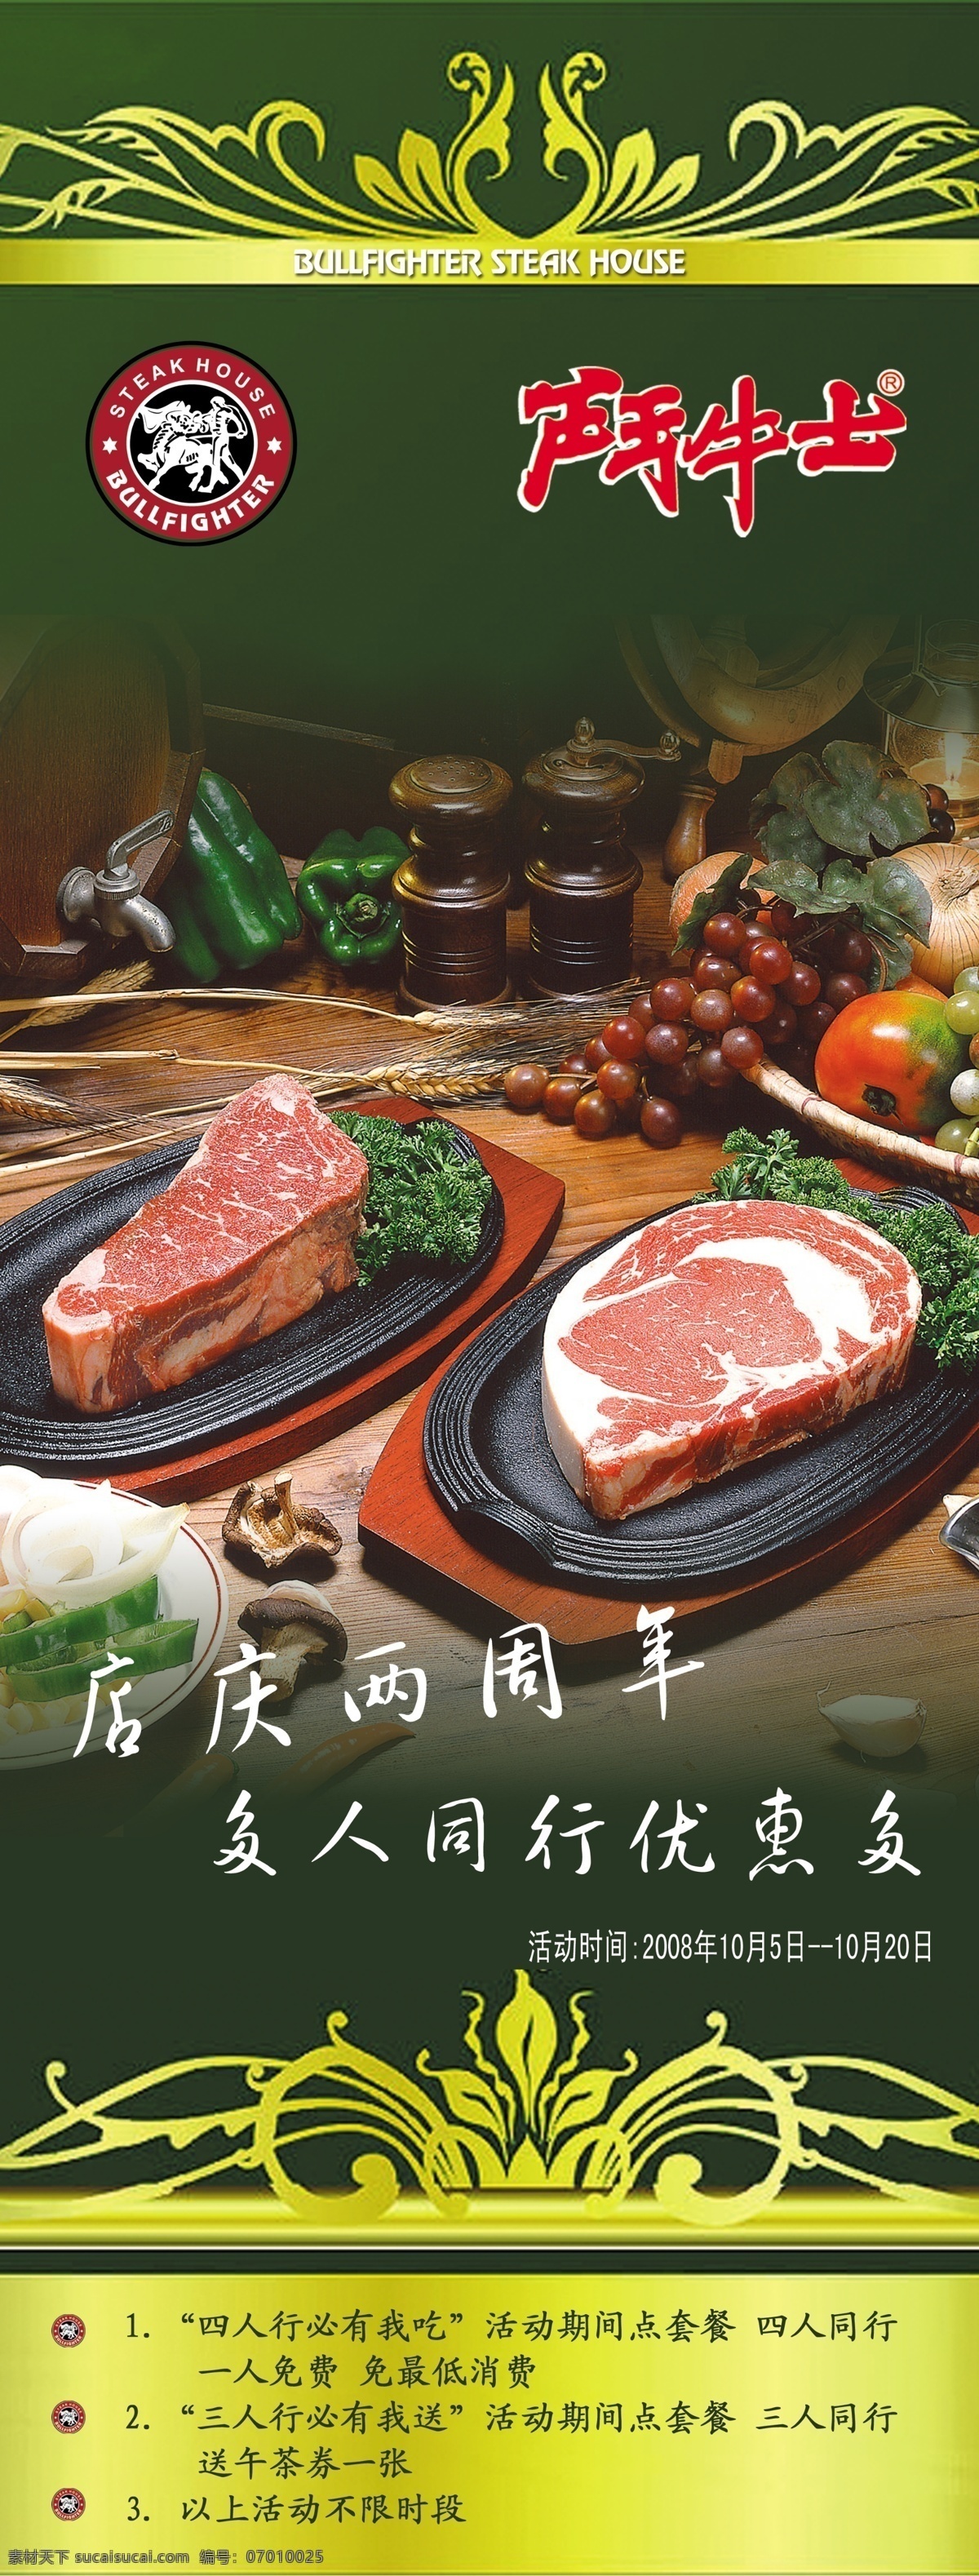 牛肉 店 美食 广告 psd素材 花纹 肉食 食物 psd源文件